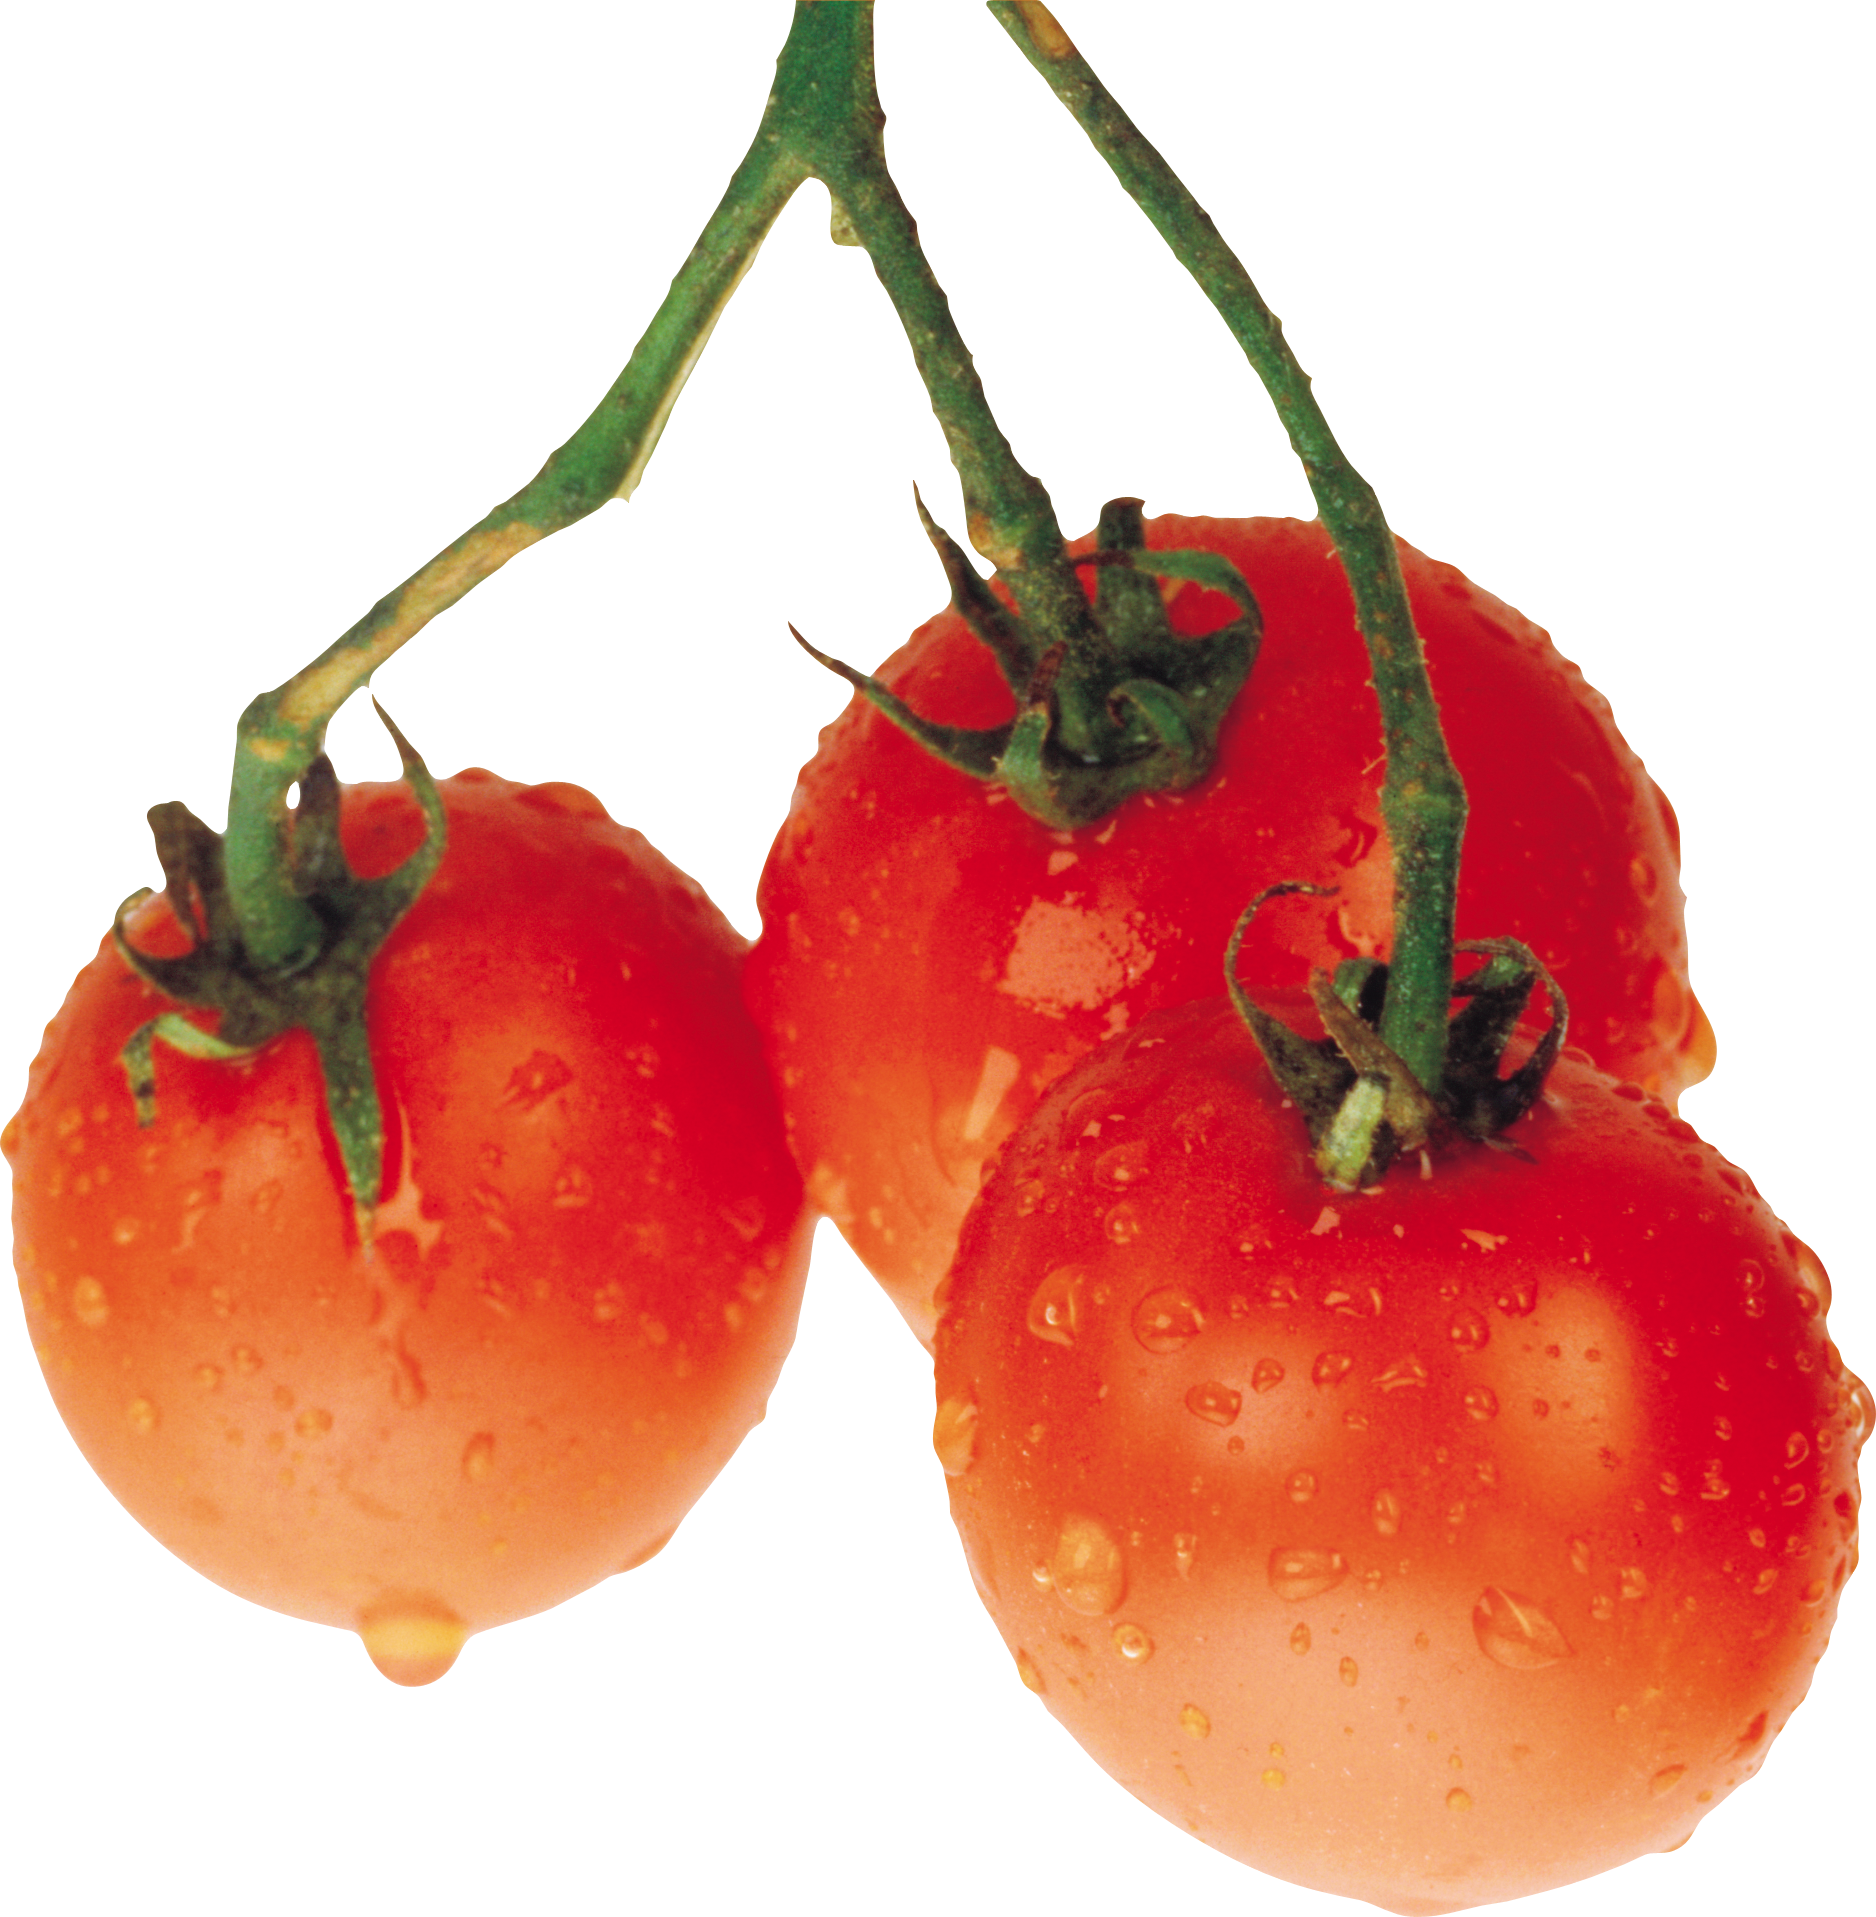 Su damlaları ile domates